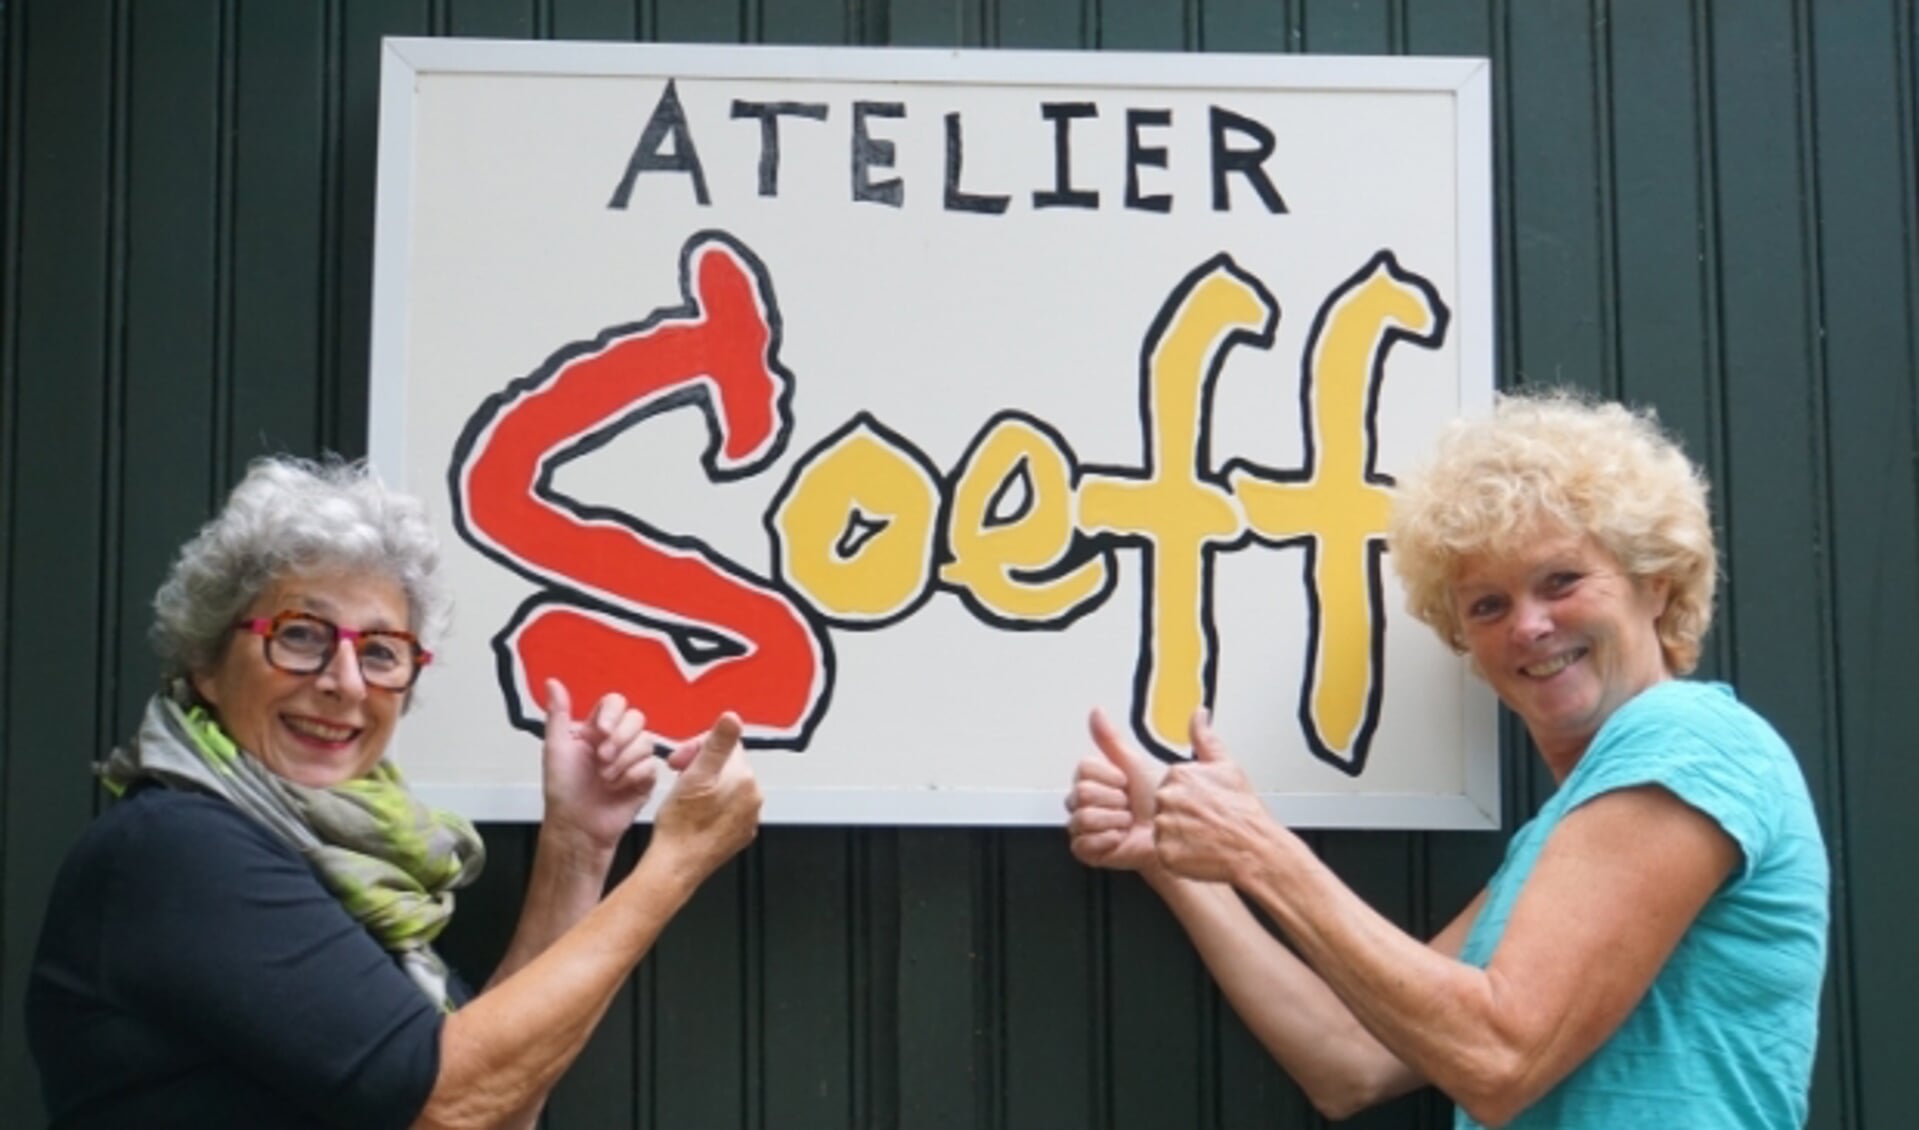 De nieuwe cursussen bij Atelier Soeff beginnen weer vanaf maandag 13 september. 